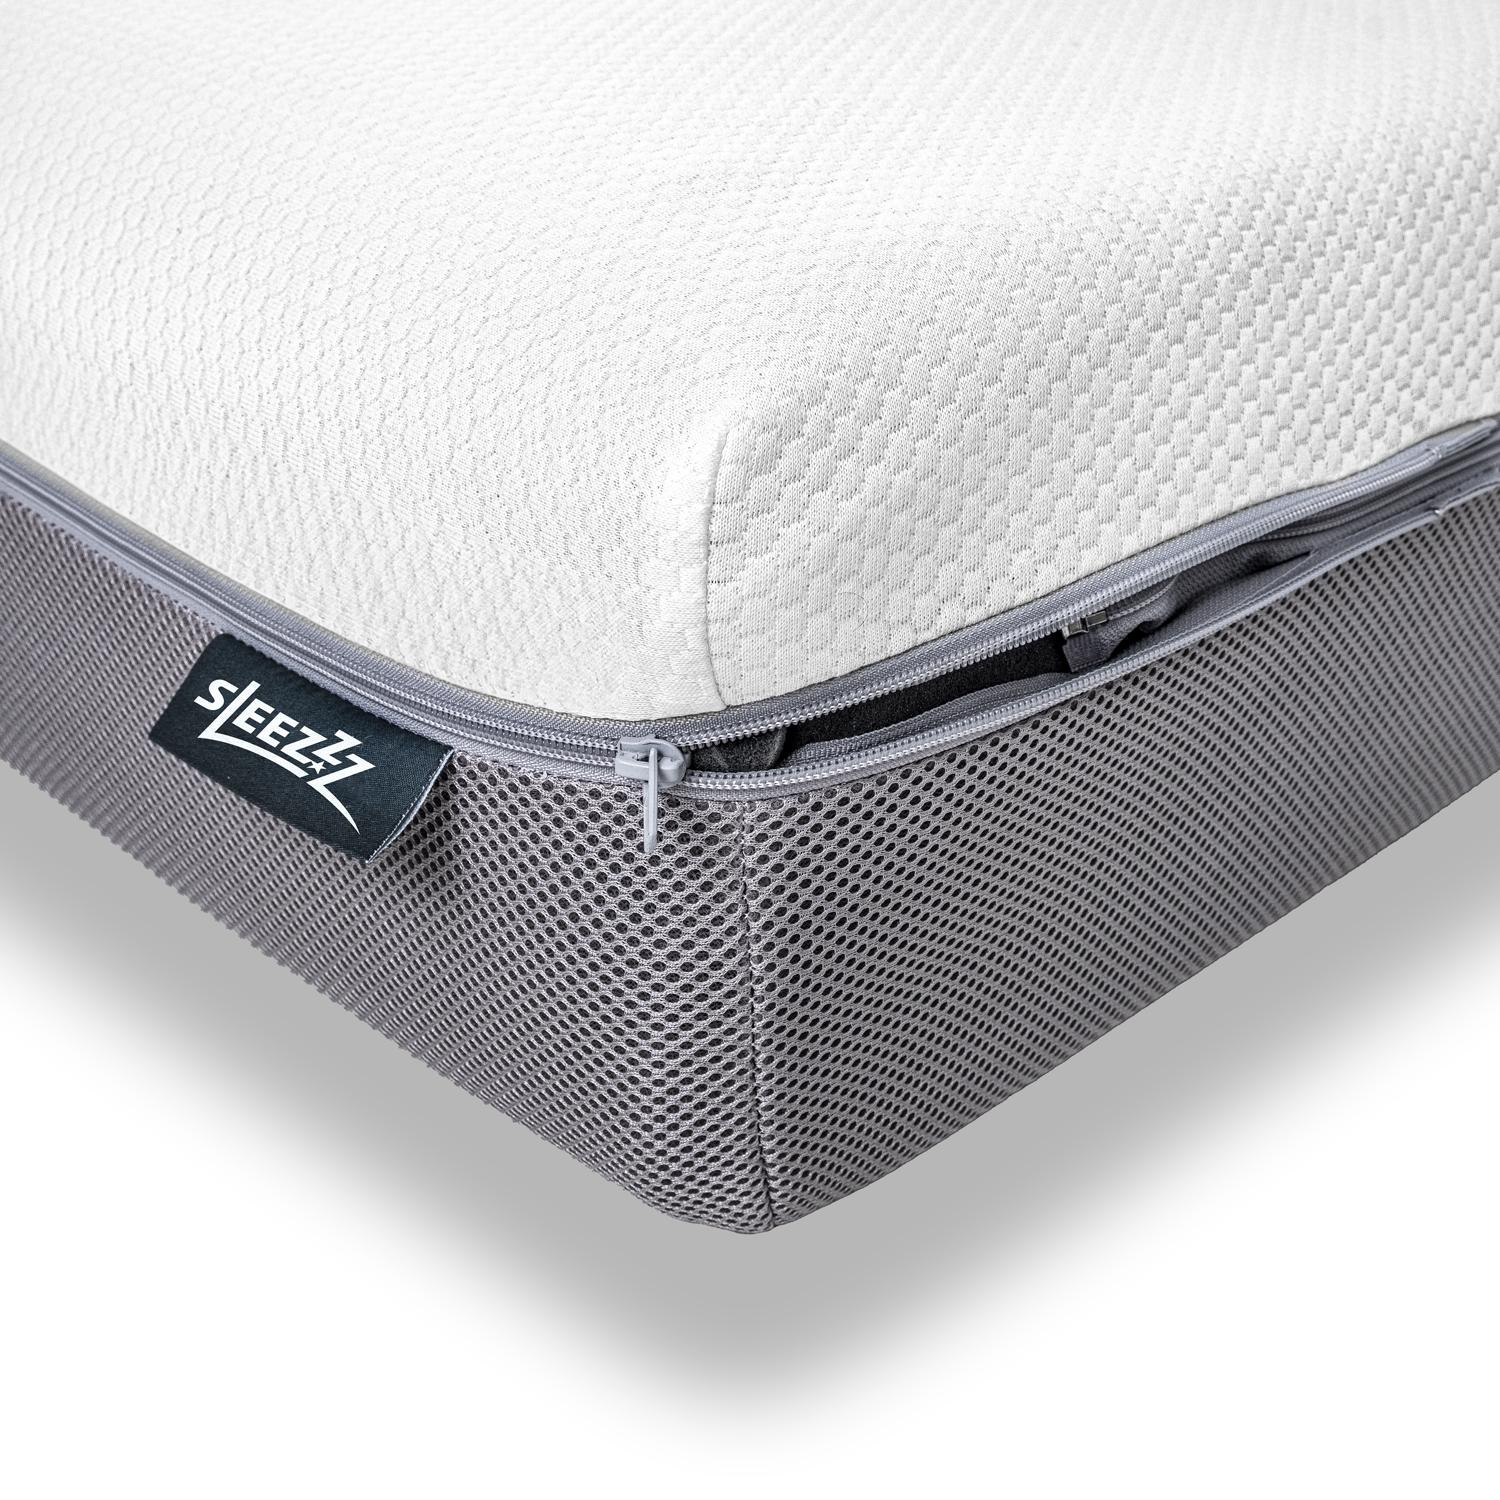 Sleezzz Premium viskoelastiskais matracis 140 x 200 cm, augstums 20 cm, cietības pakāpe H2/H3, ar abpusējiem rokturiem